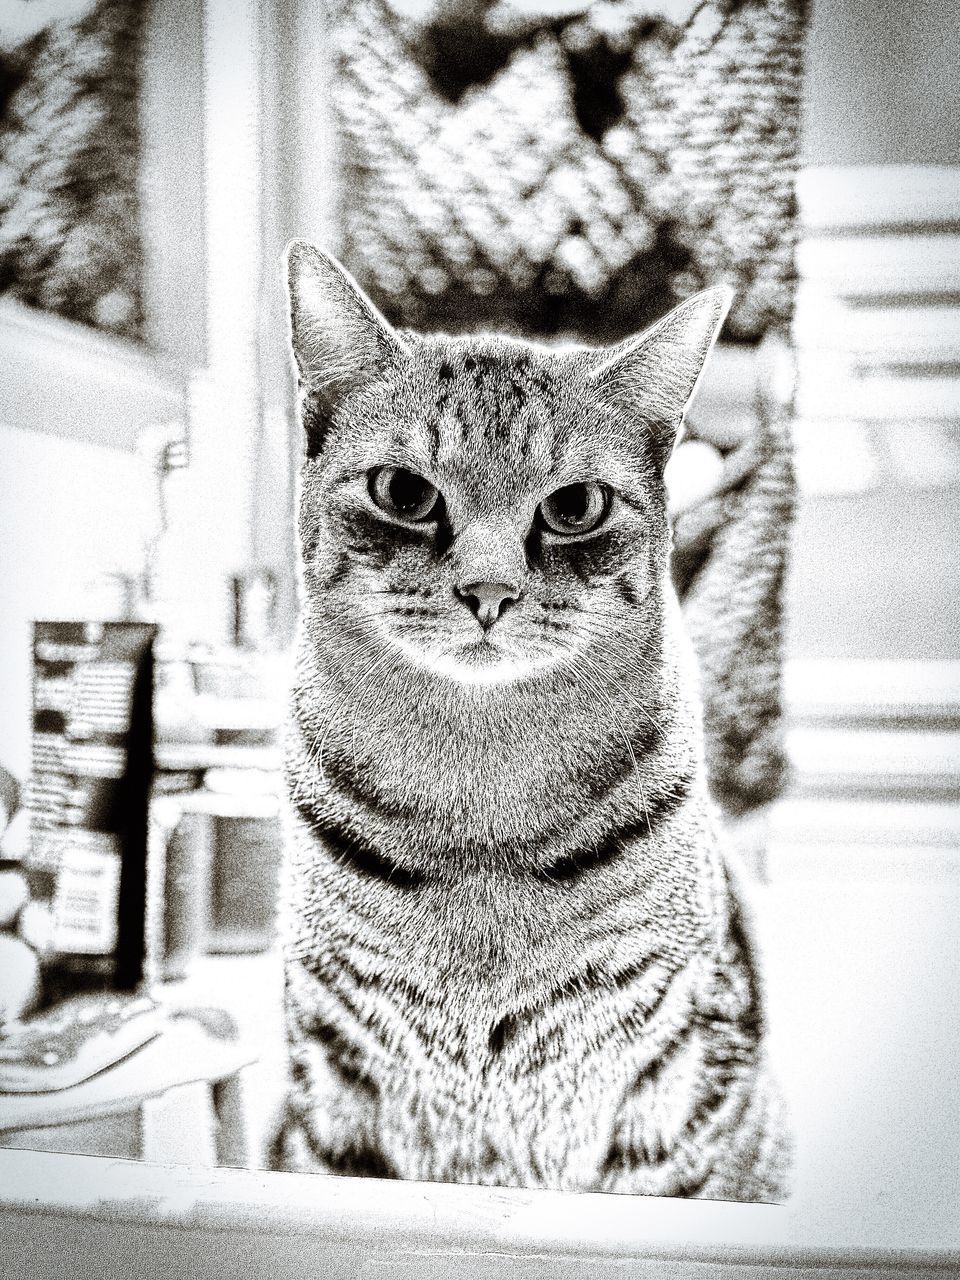 CLOSE-UP PORTRAIT OF CAT